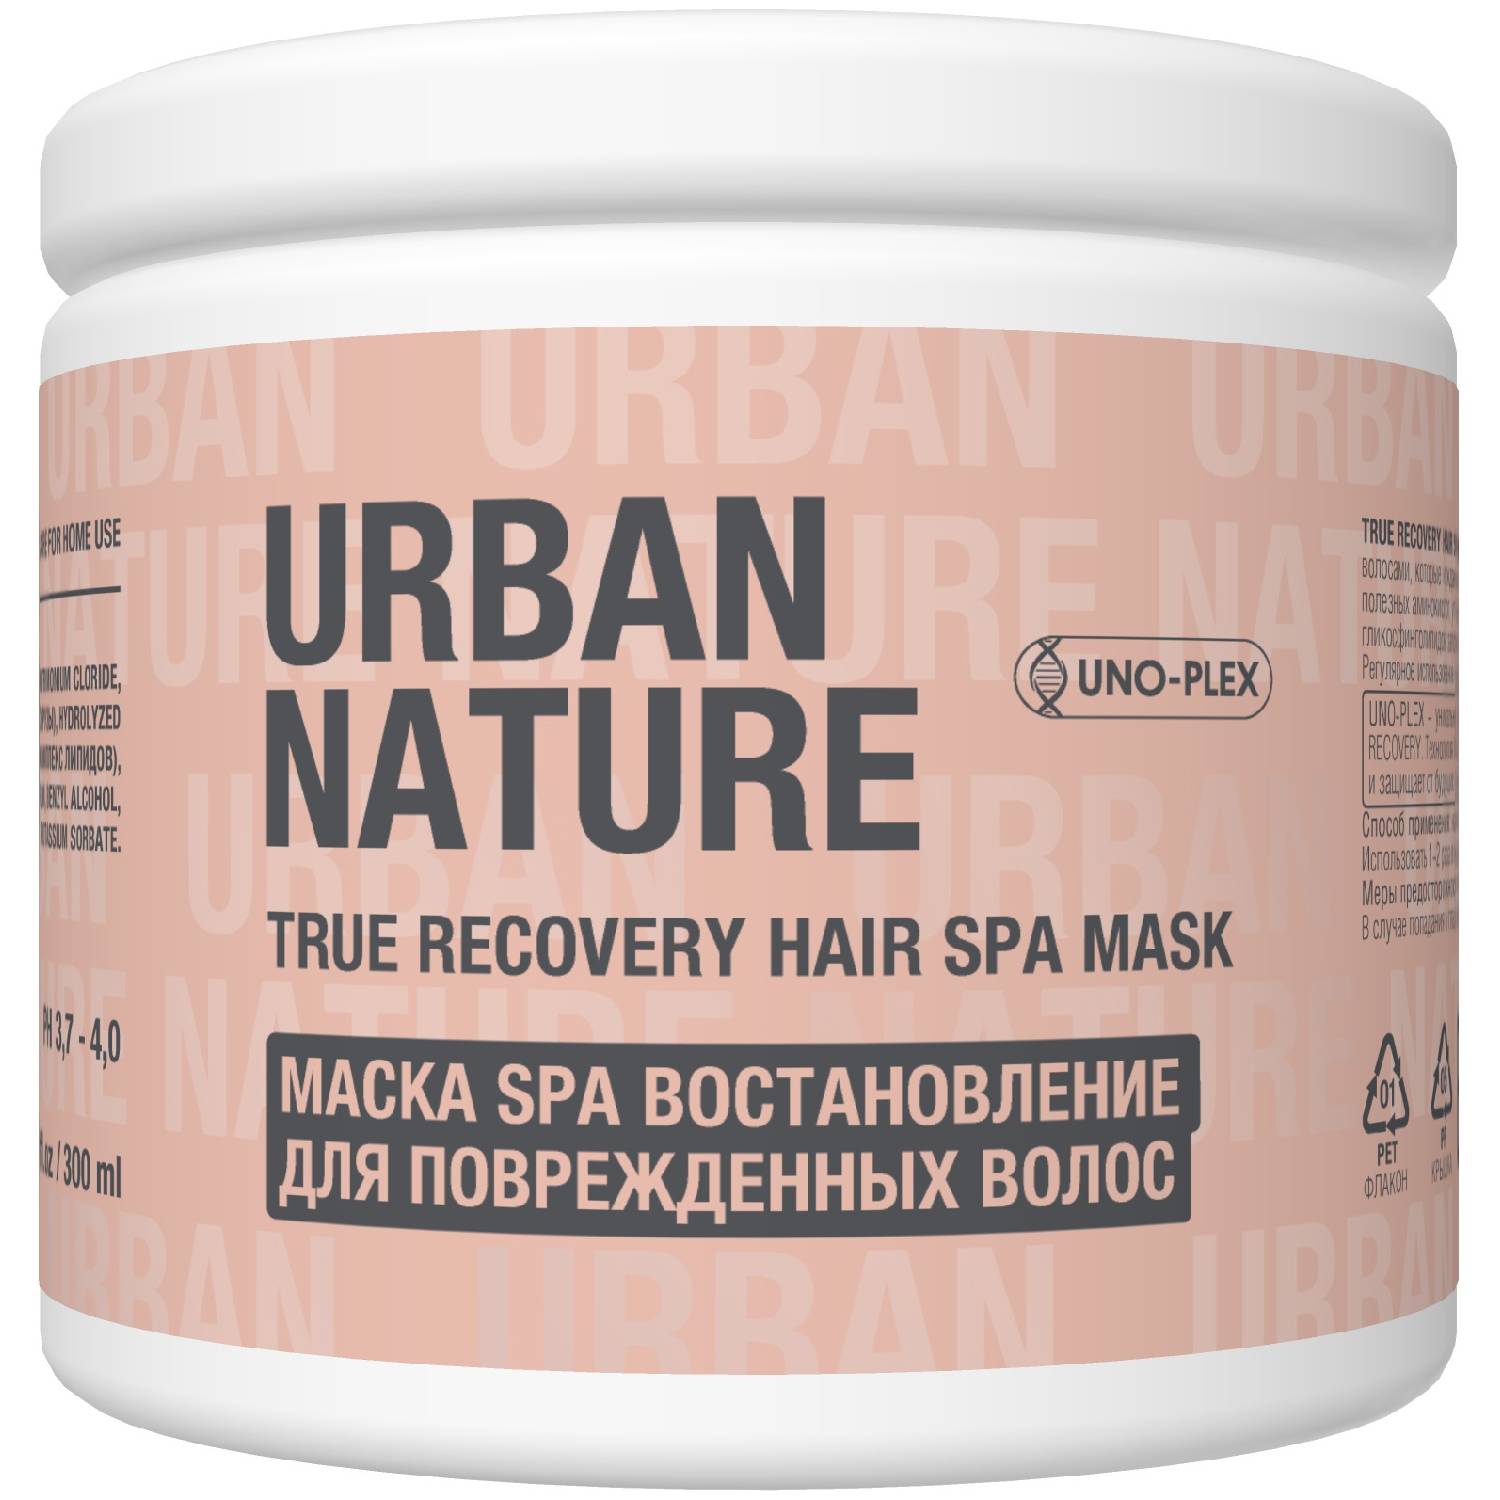 Urban Nature Маска SPA восстановление для поврежденных волос, 300 мл (Urban Nature, True Recovery)